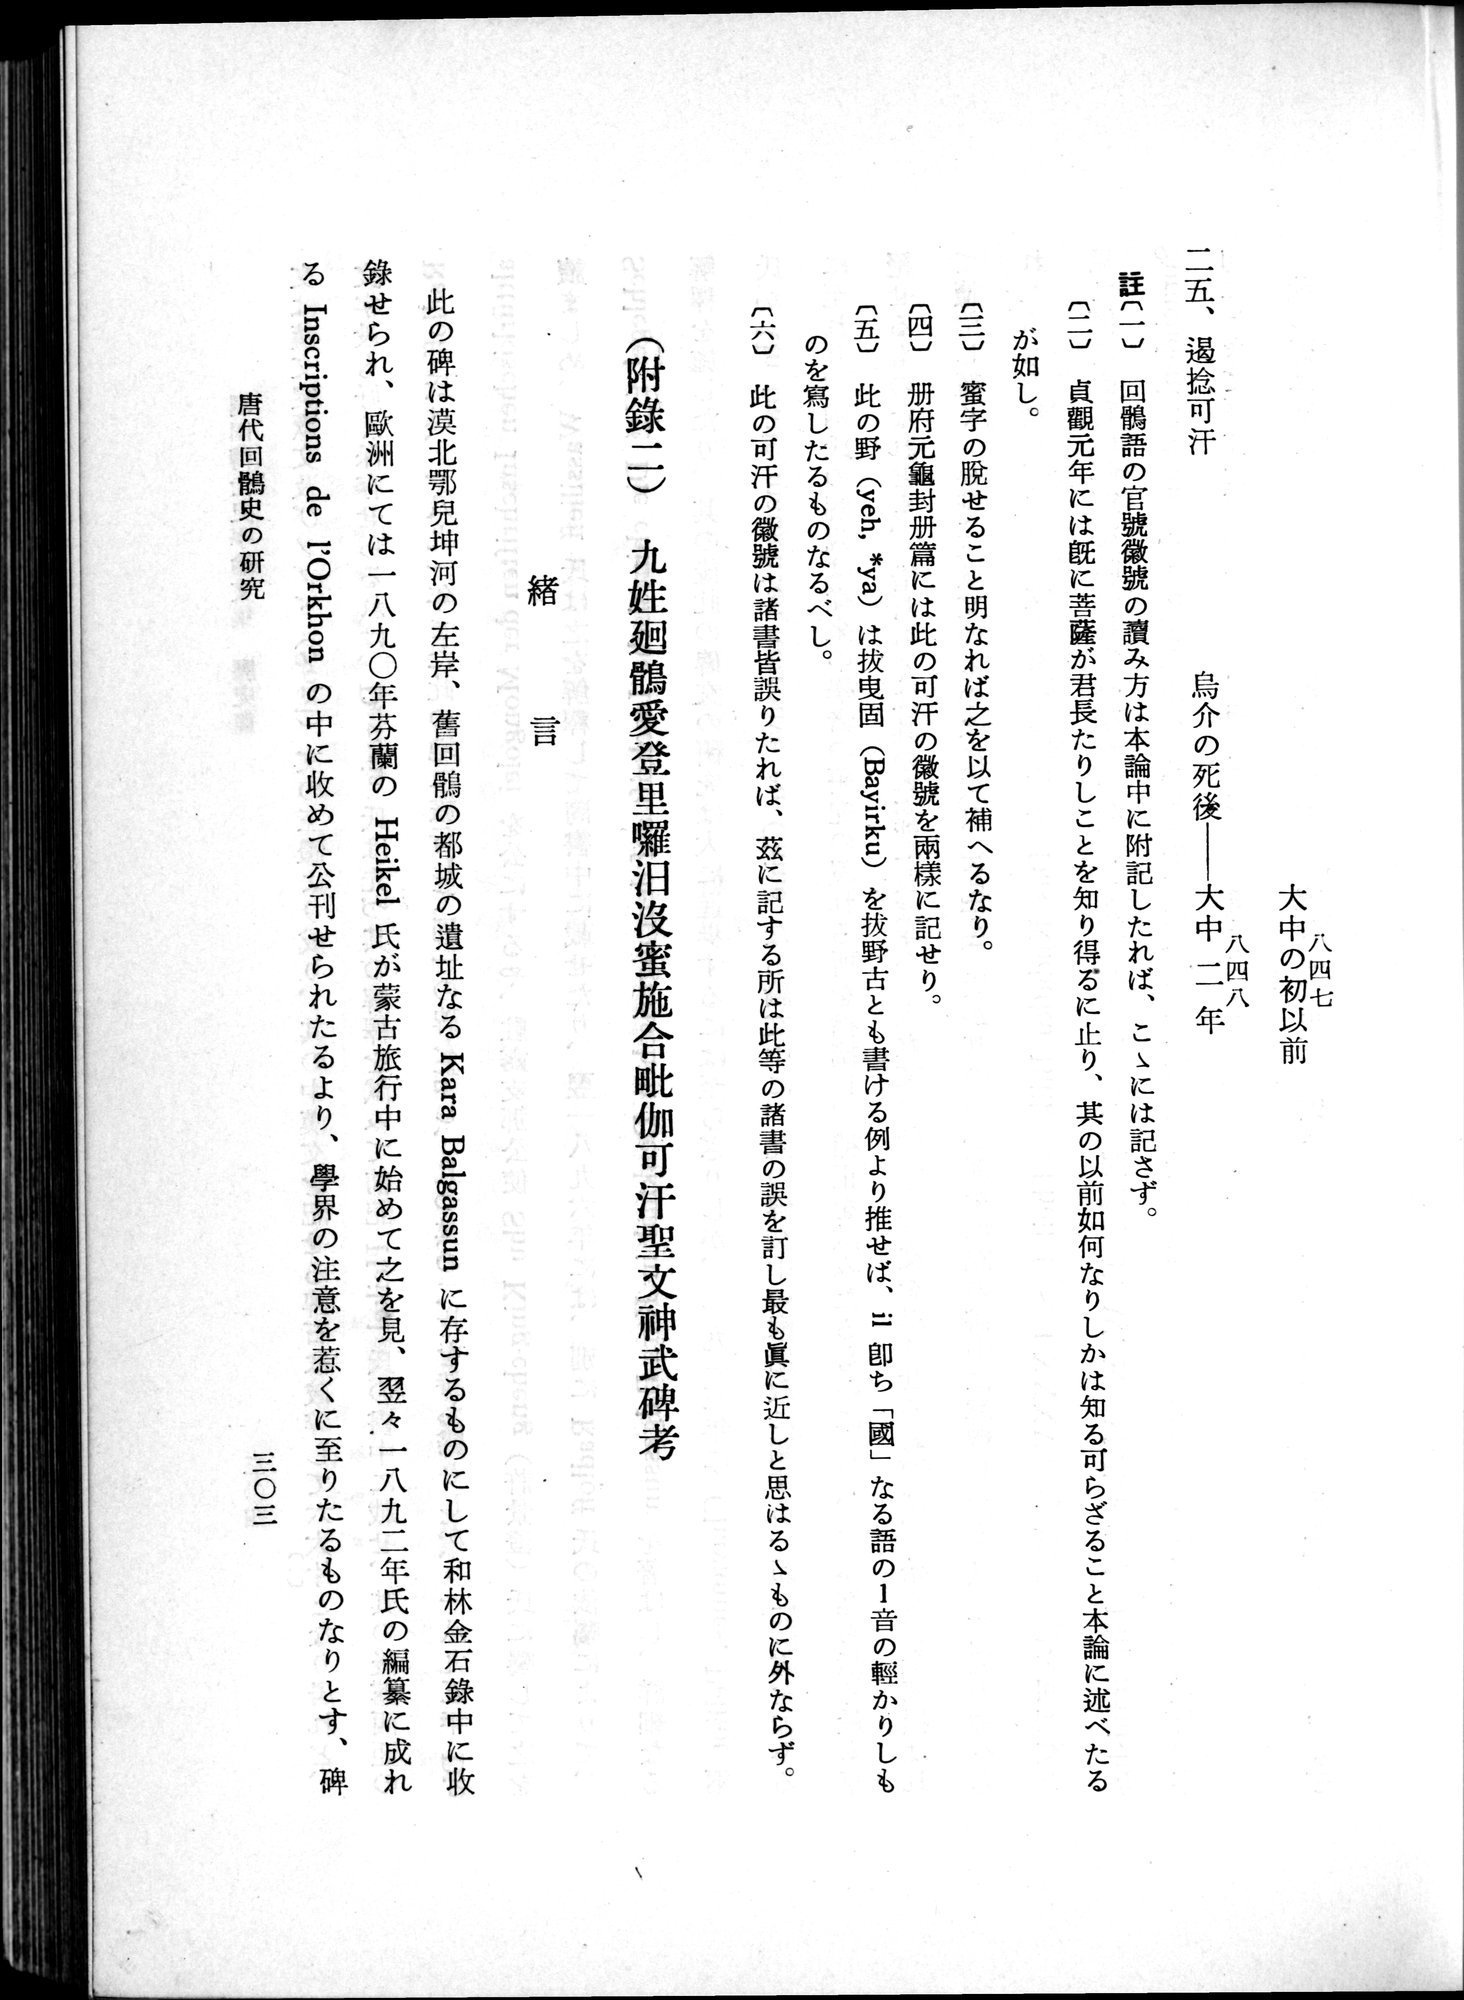 羽田博士史学論文集 : vol.1 / Page 341 (Grayscale High Resolution Image)